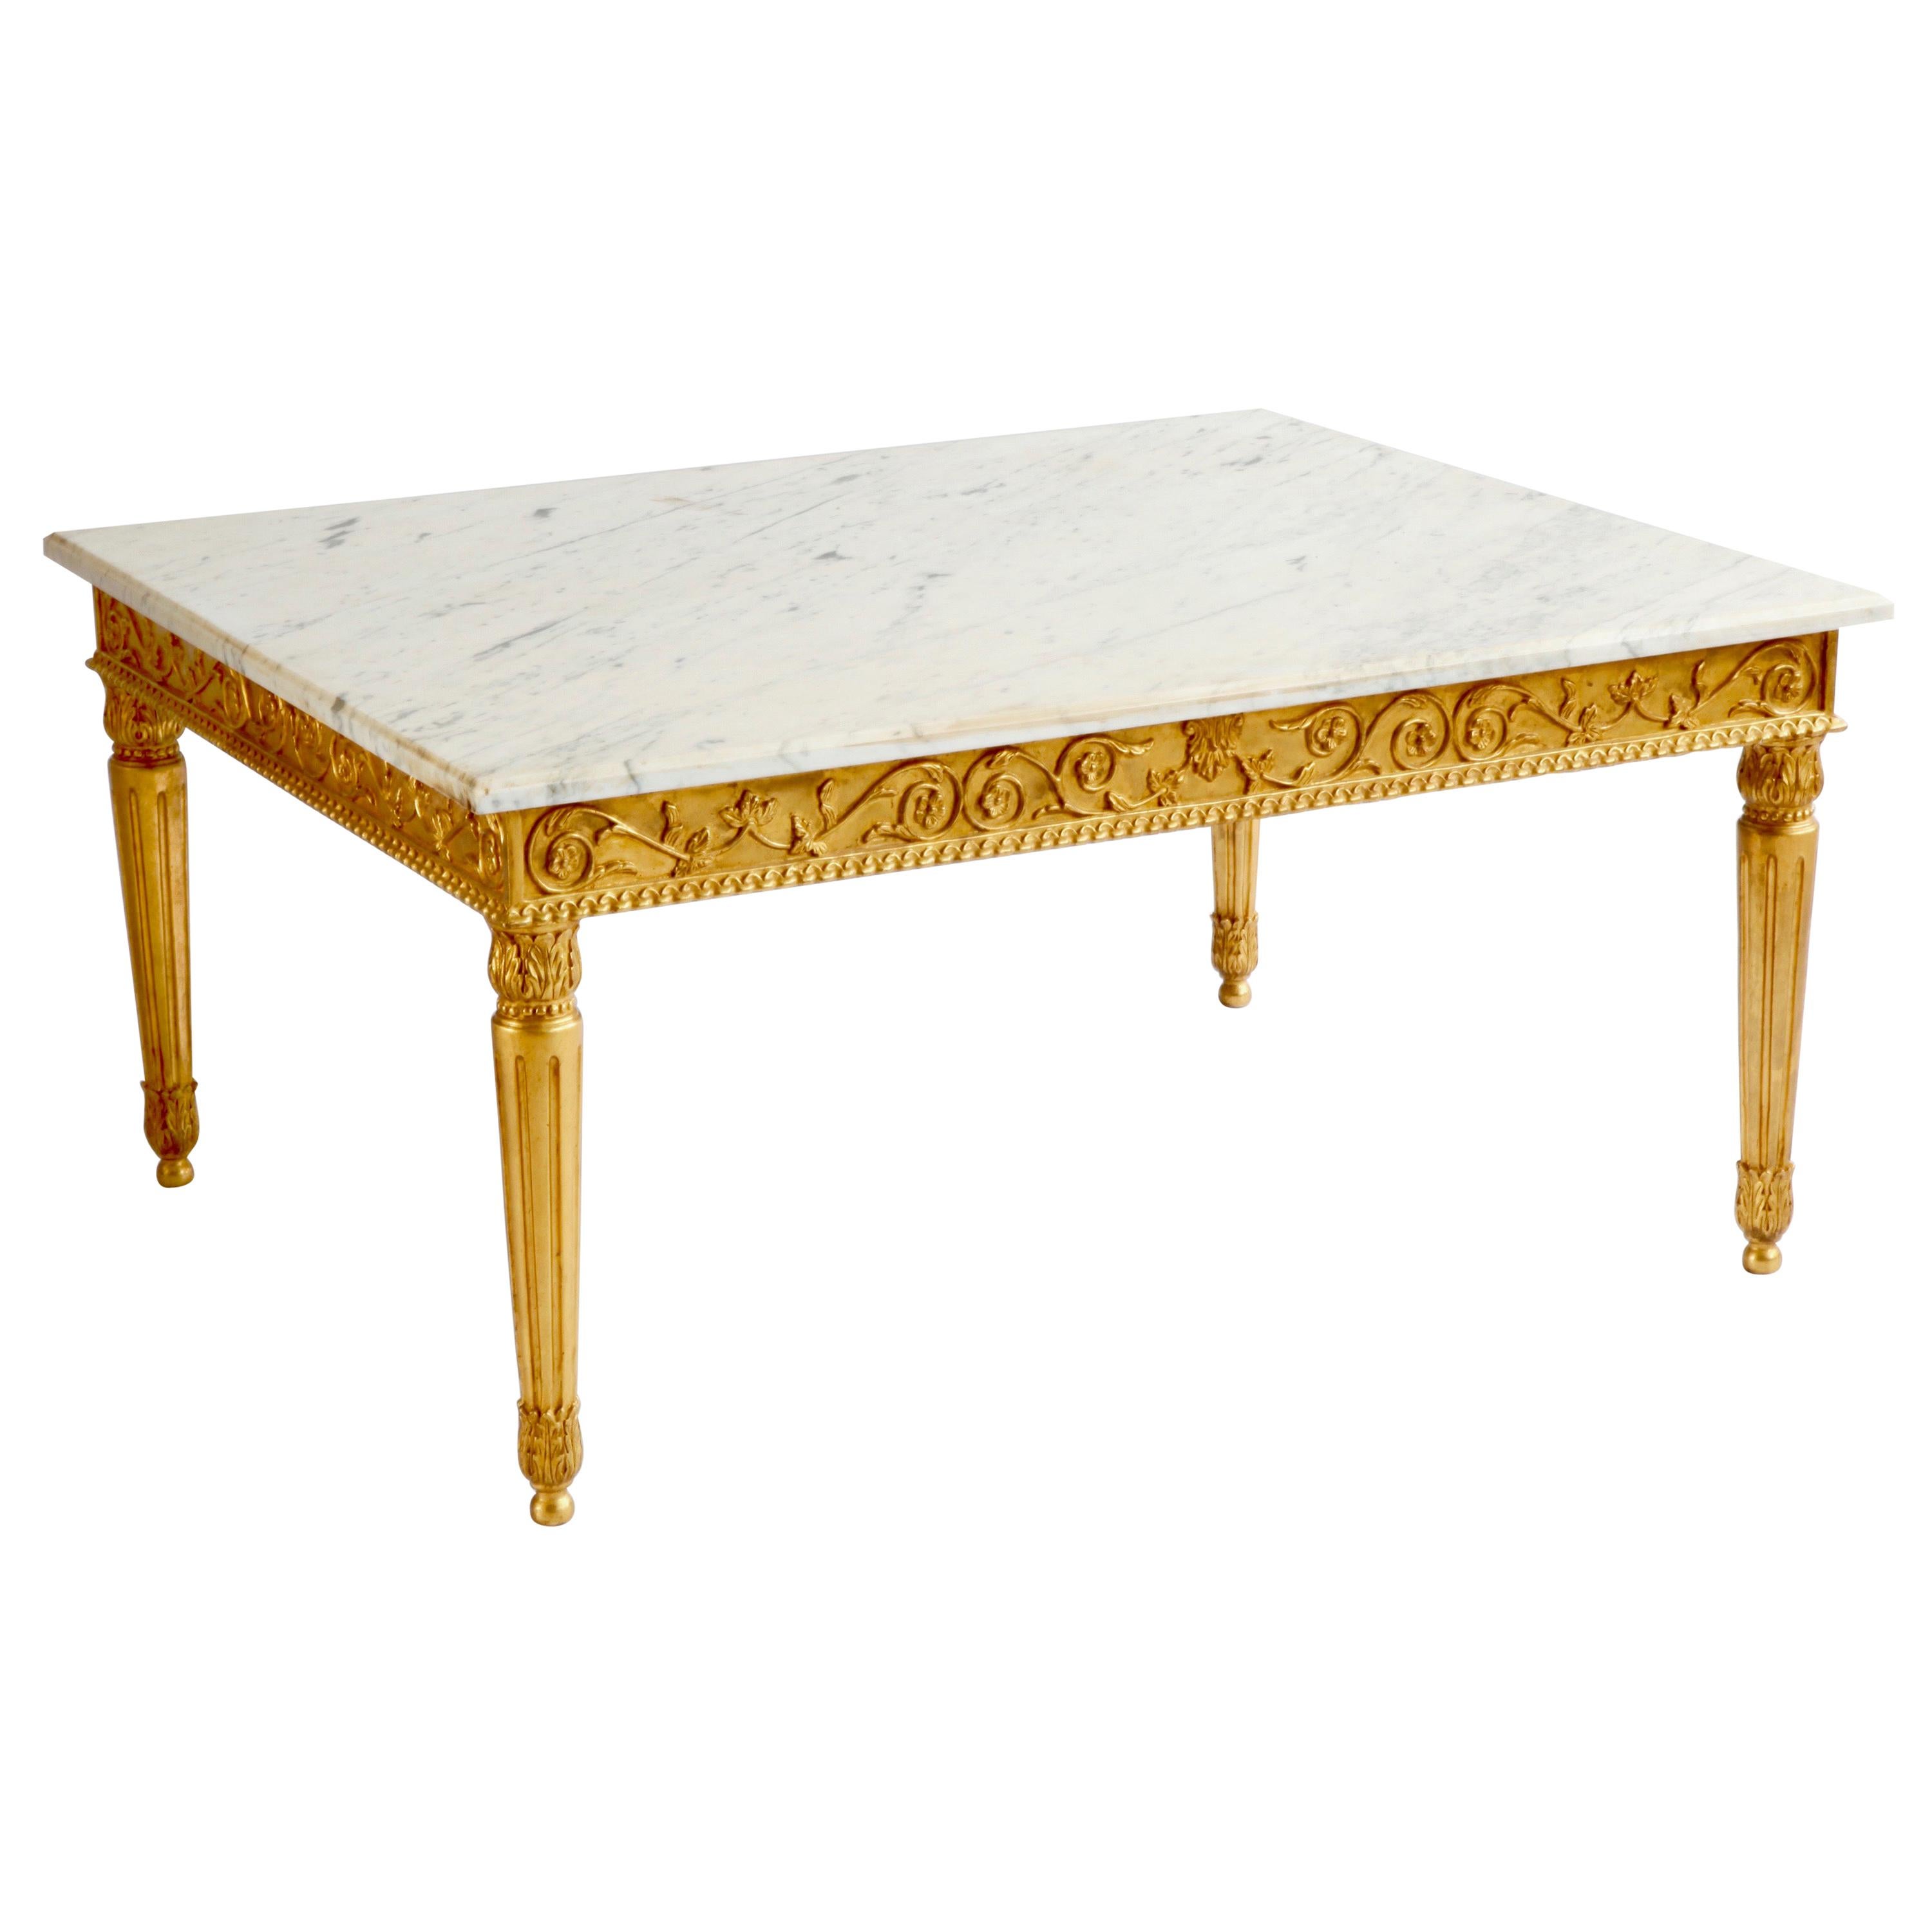 Mesa de centro rectangular francesa de mármol y dorado, estilo Luis XVI, tallada a mano